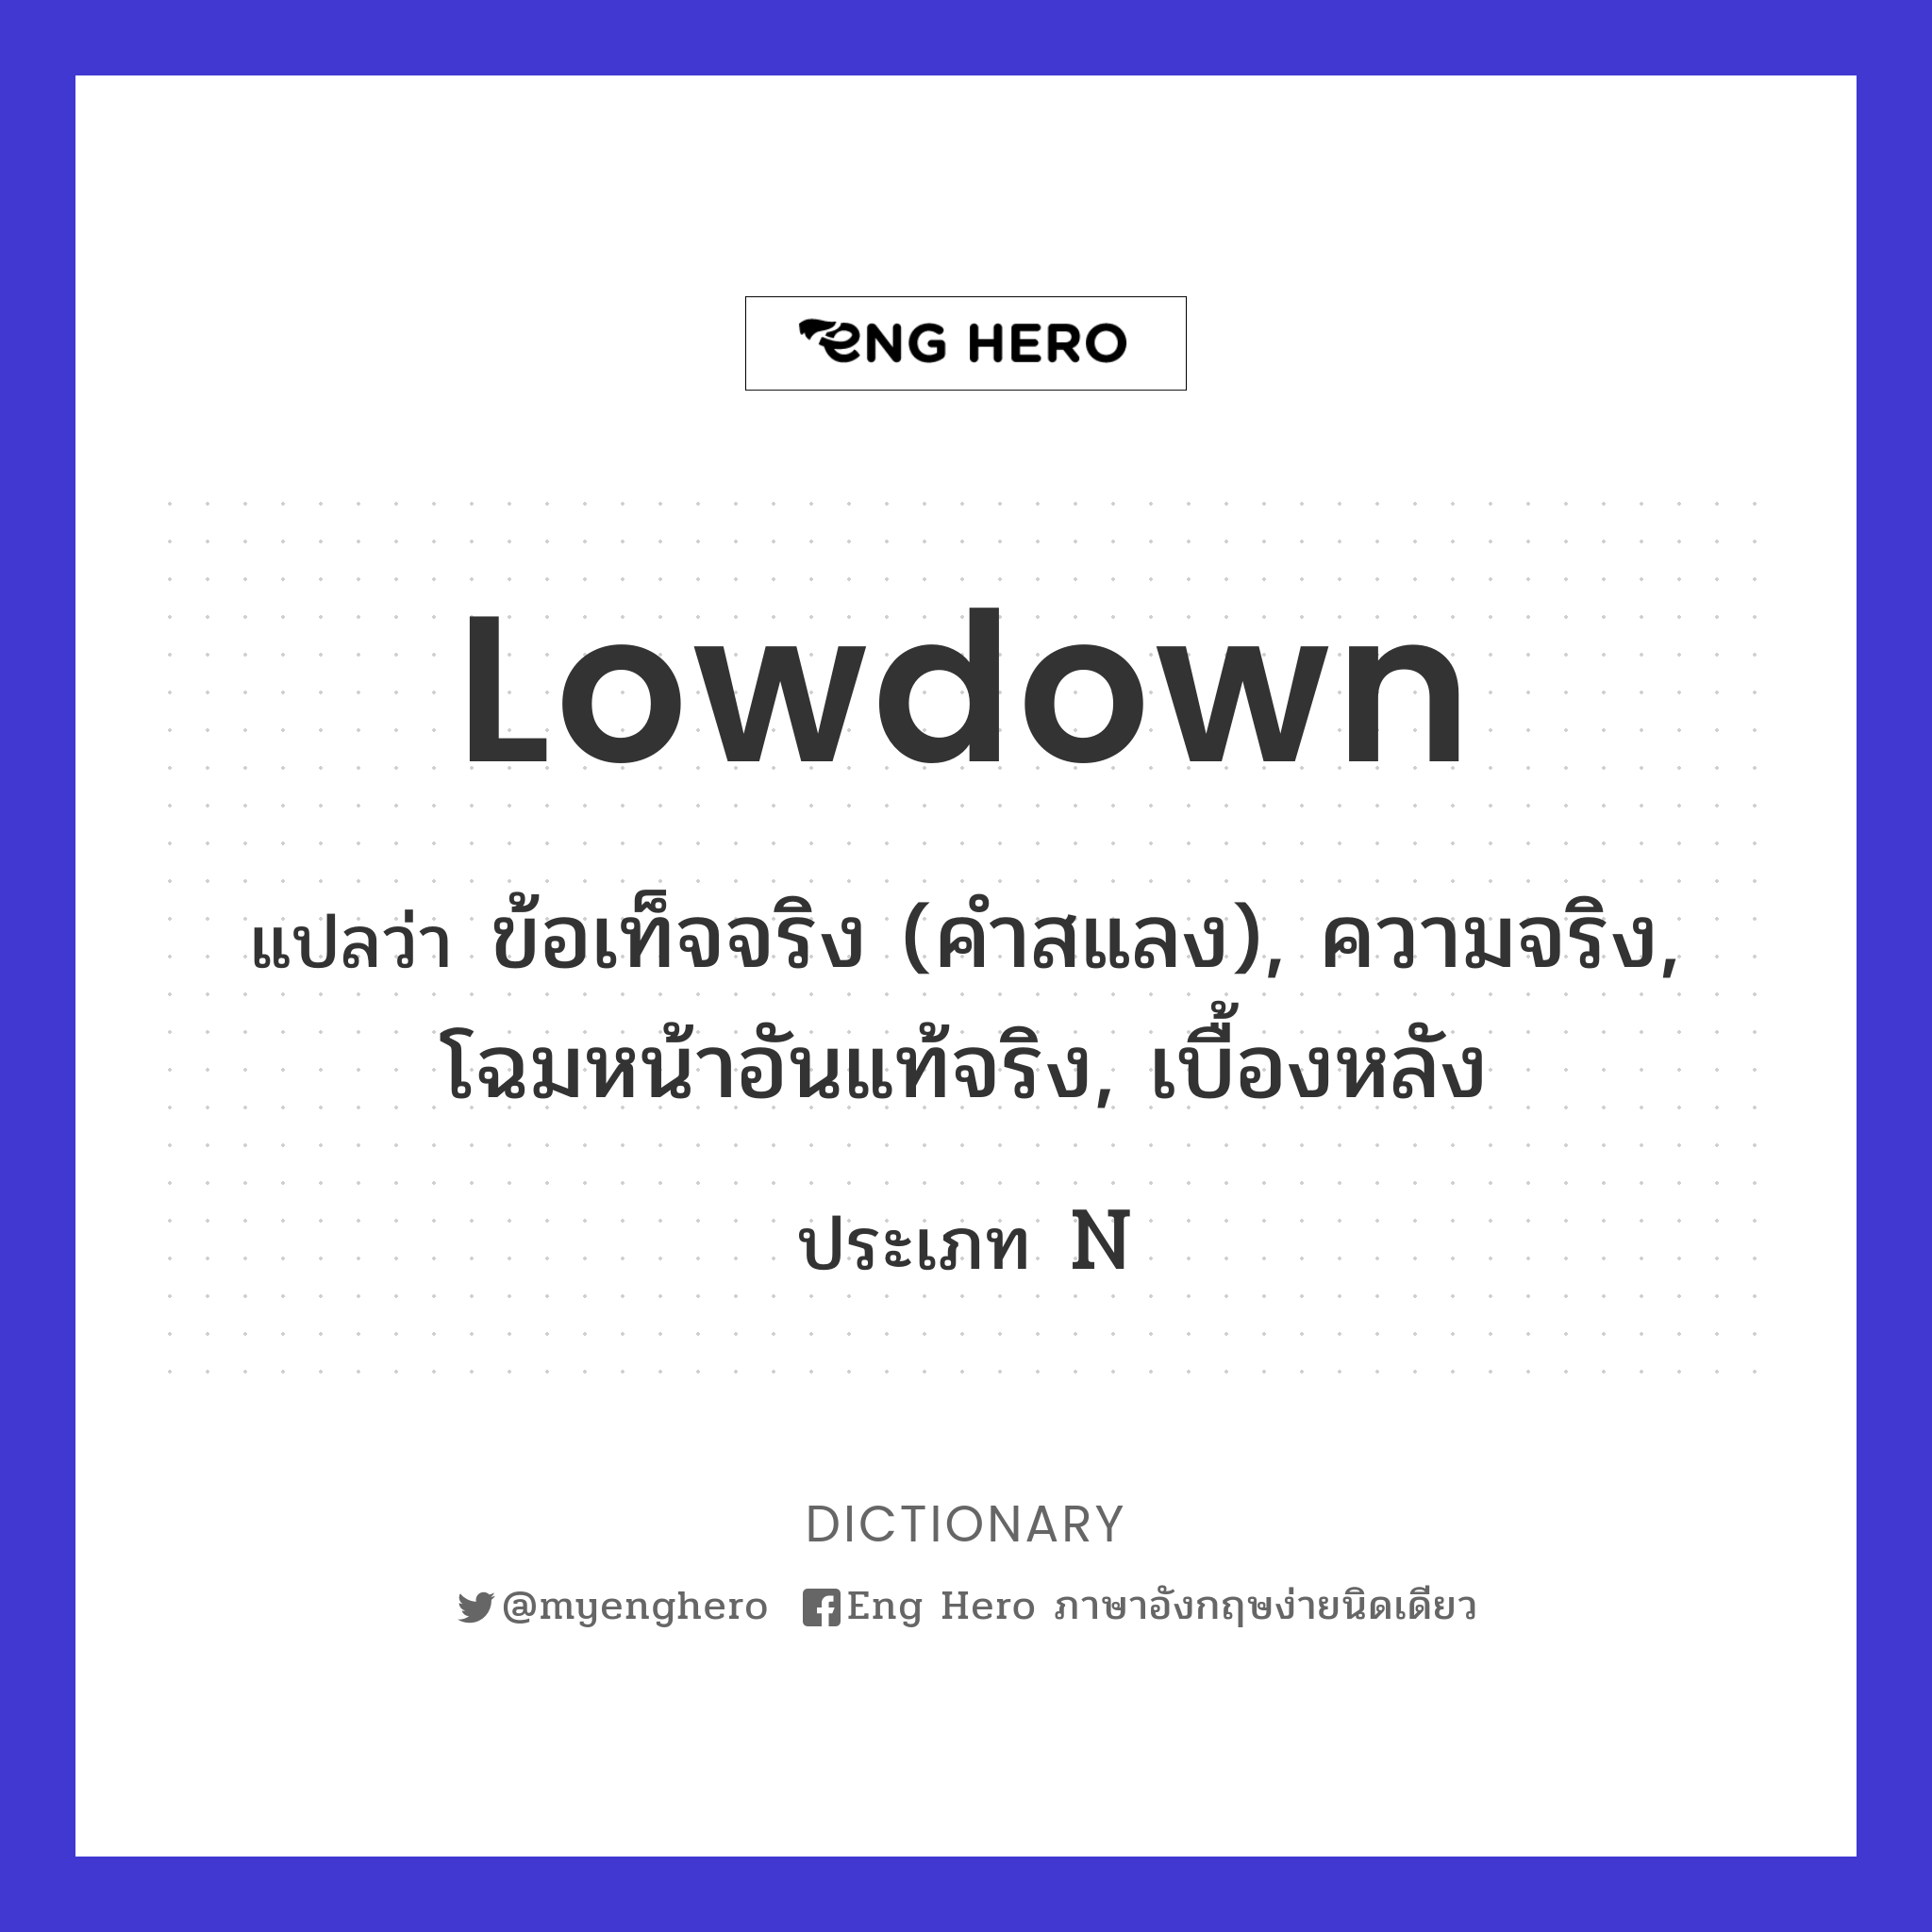 lowdown